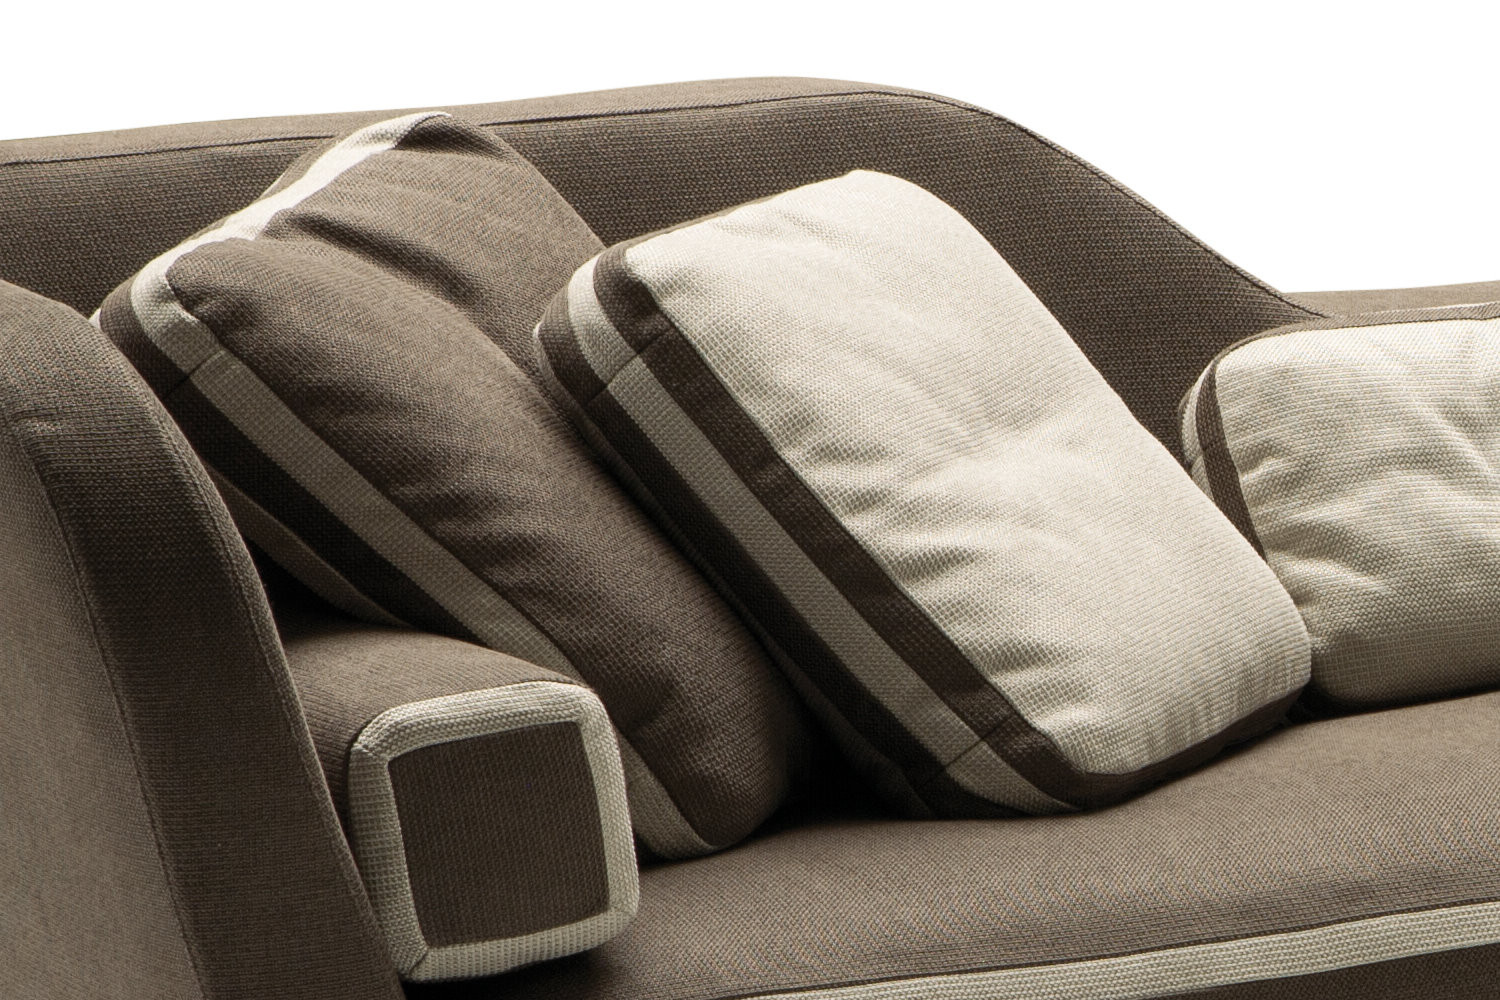 Cuscino lavabile fino a 60° con chiusura lampo per imbottitura Ökotex 60 x 60 cm Bianco – Set di 2 cuscini per letto e come cuscino decorativo Cuscino decorativo per divano e divano 